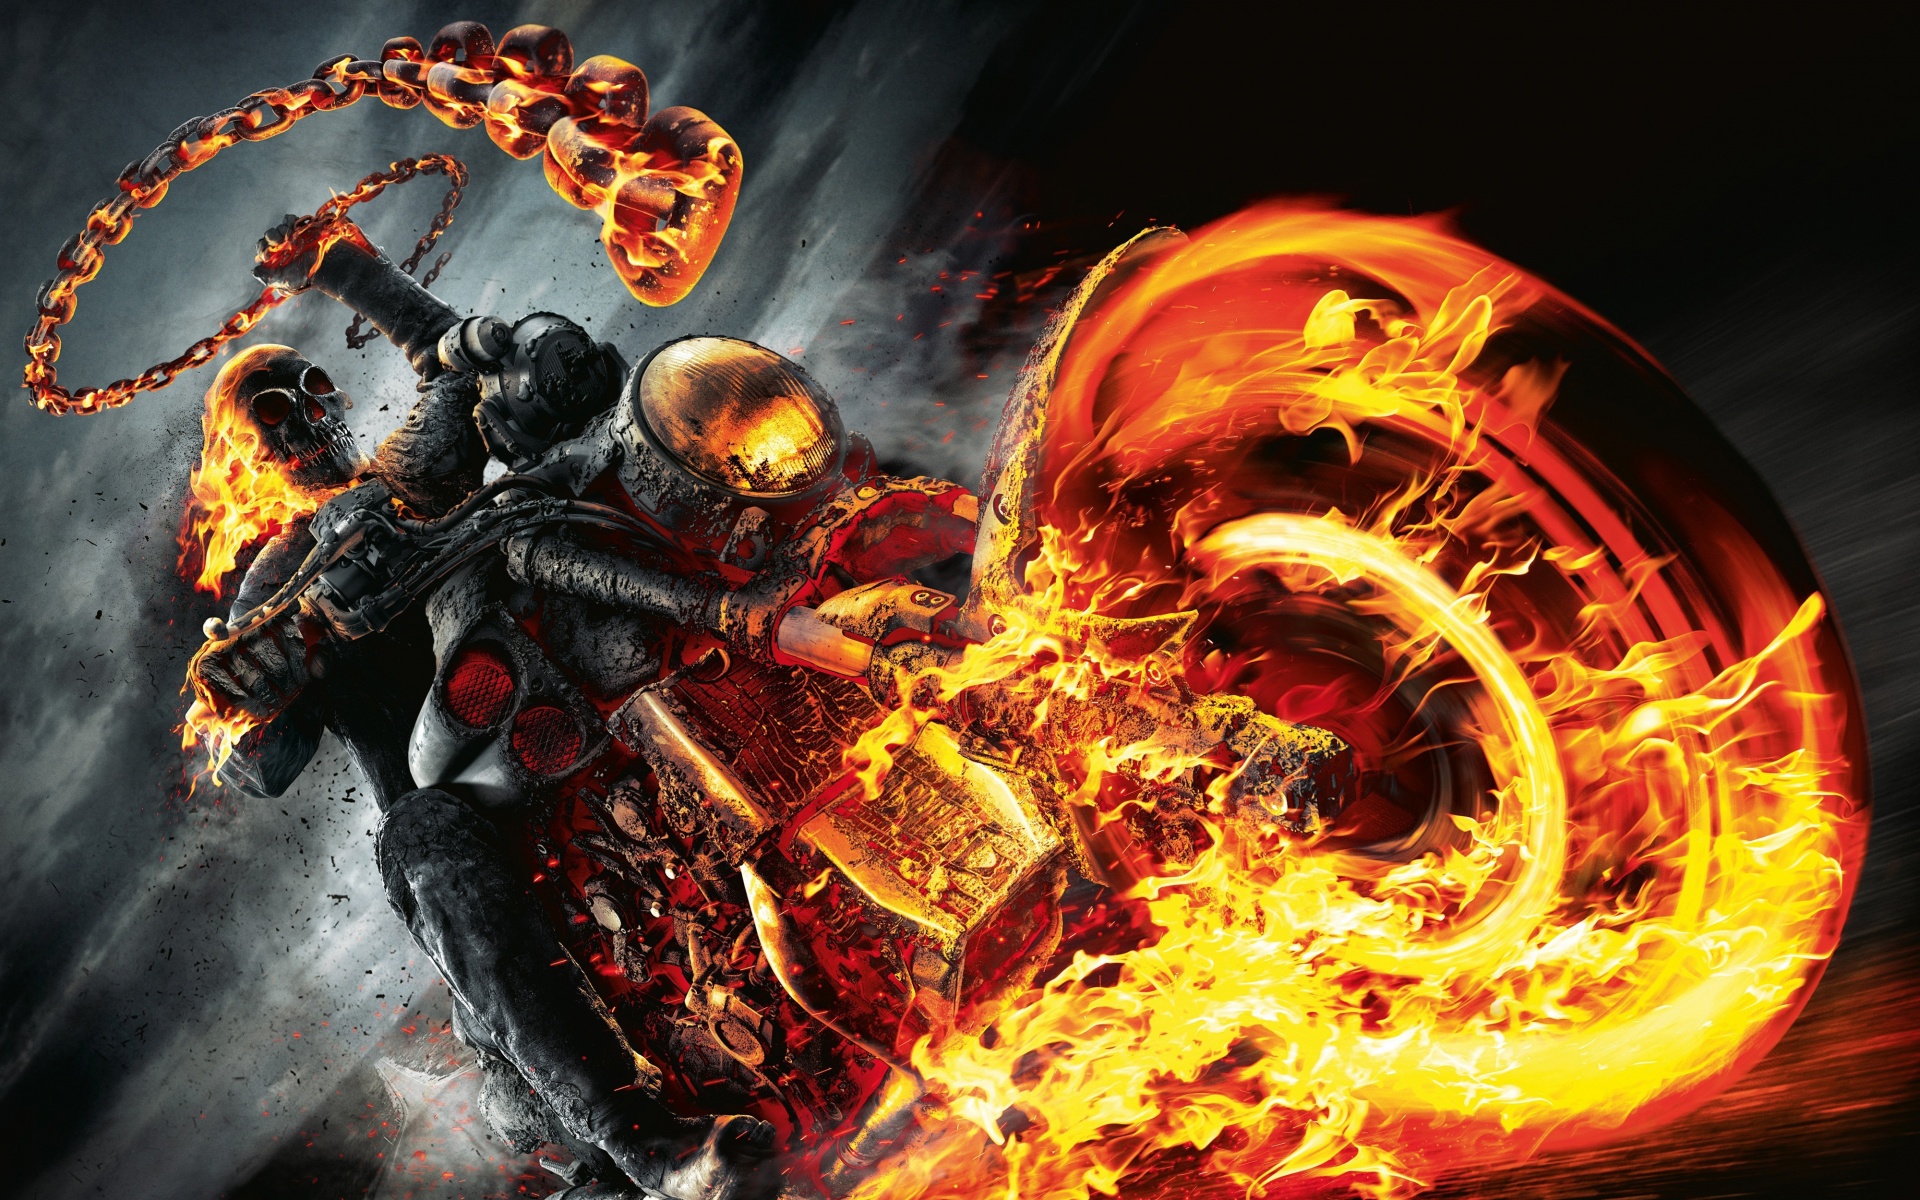 74+] Ghost Rider Wallpaper Hd - WallpaperSafari